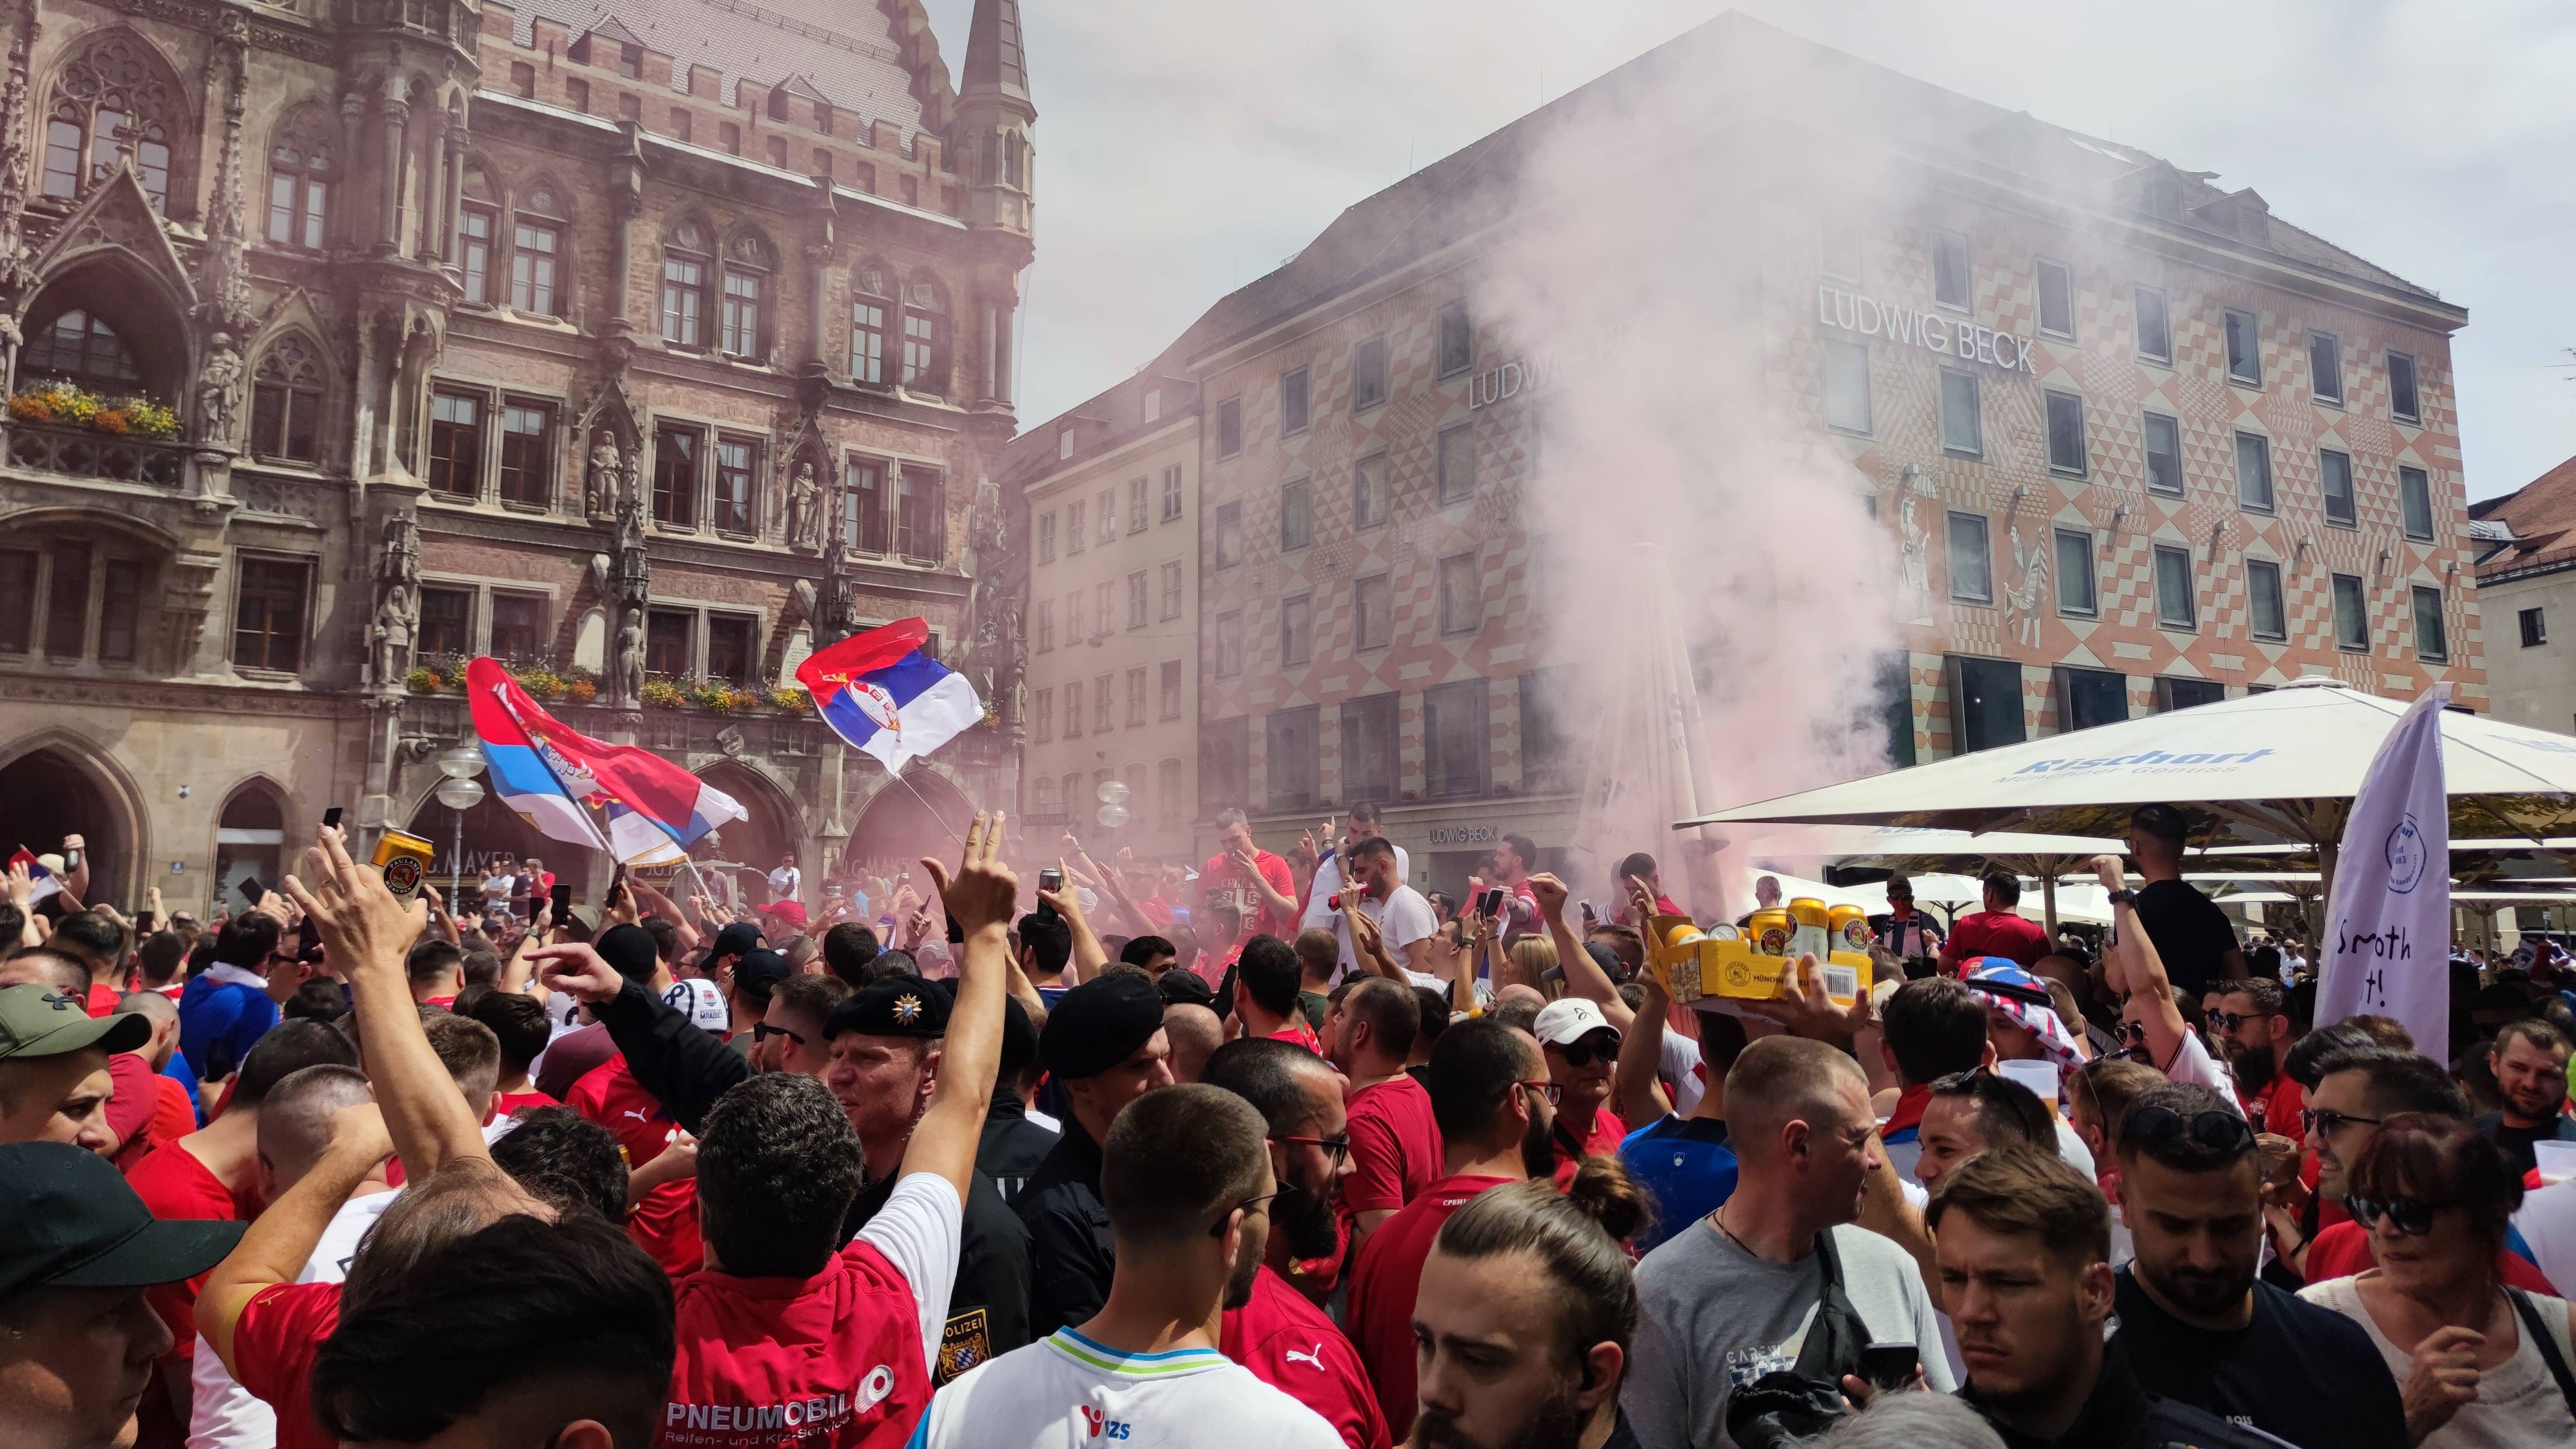 <strong>Serben stimmen sich auf dem Marienplatz ein</strong><br>Der Marienplatz zählt zu den beliebtesten Plätzen der Fans, um sich auf das Spiel ihrer Mannschaft einzustimmen. Demnach kommt es nicht überraschend, dass auch die Serben den Platz gut füllen konnten.